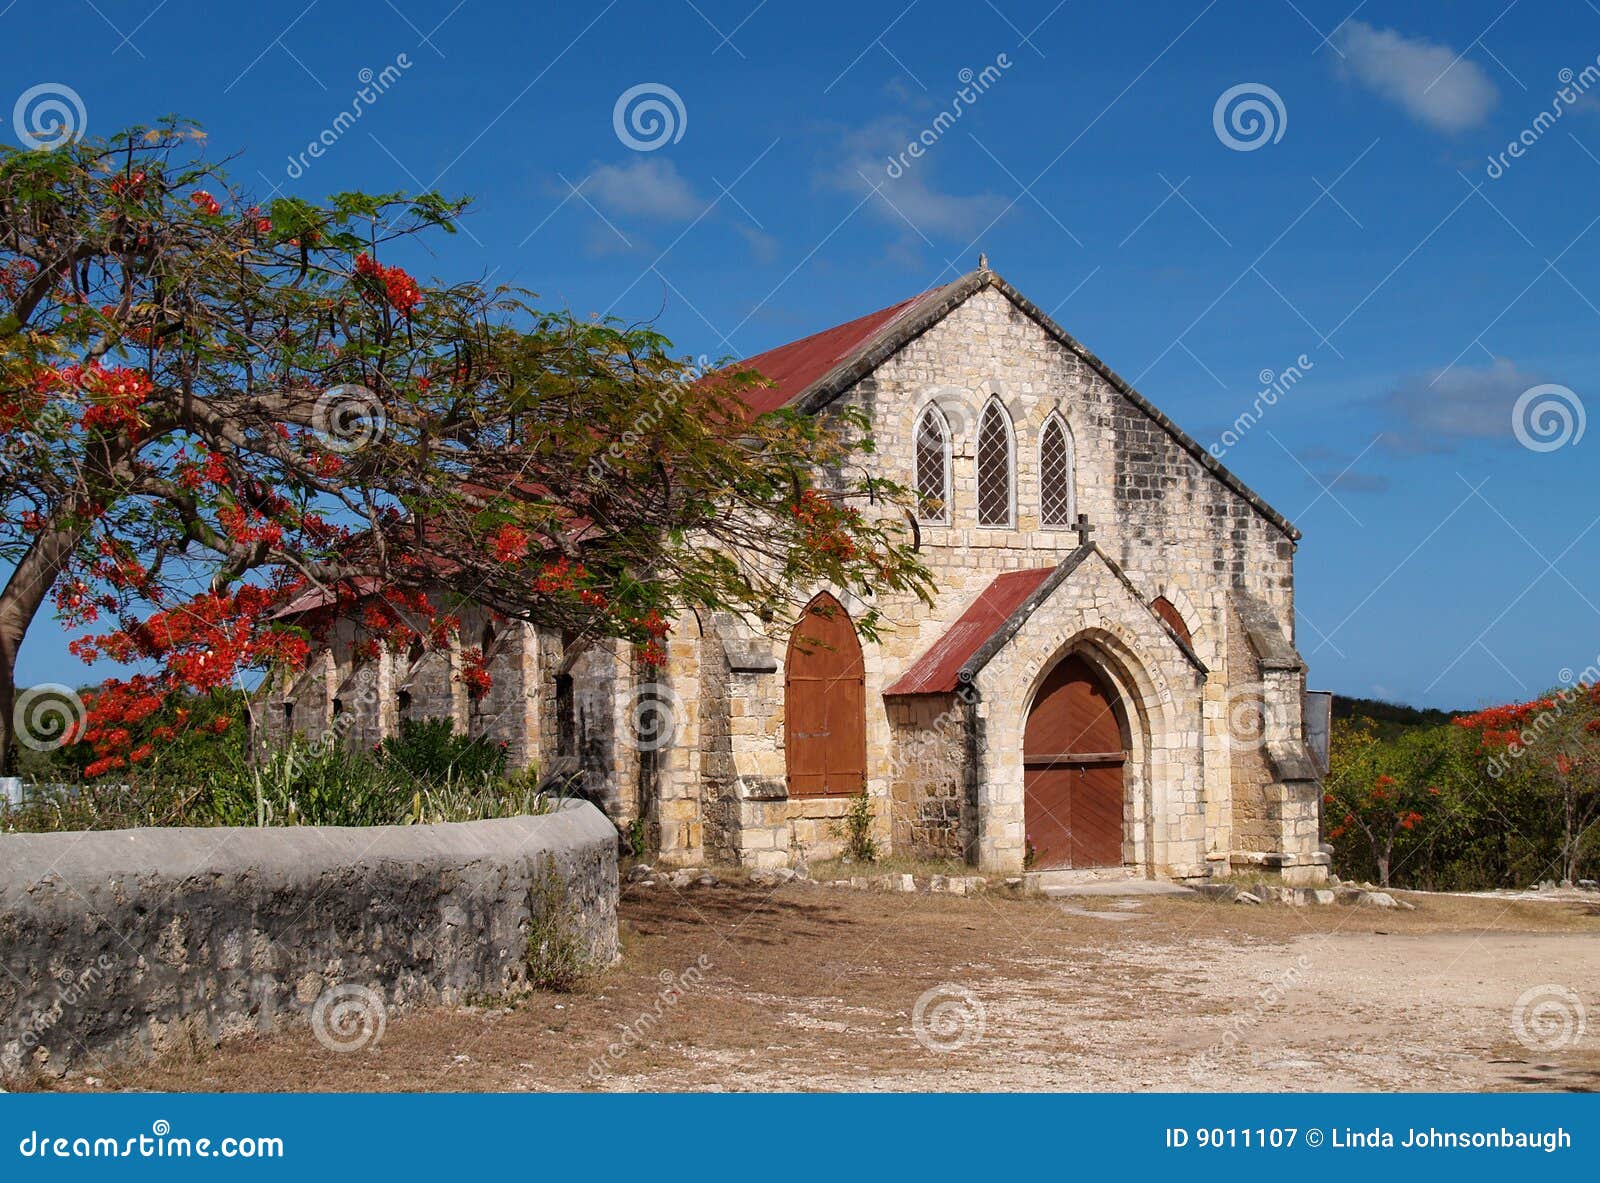 gilbert memorial methodist church in antigua barbu